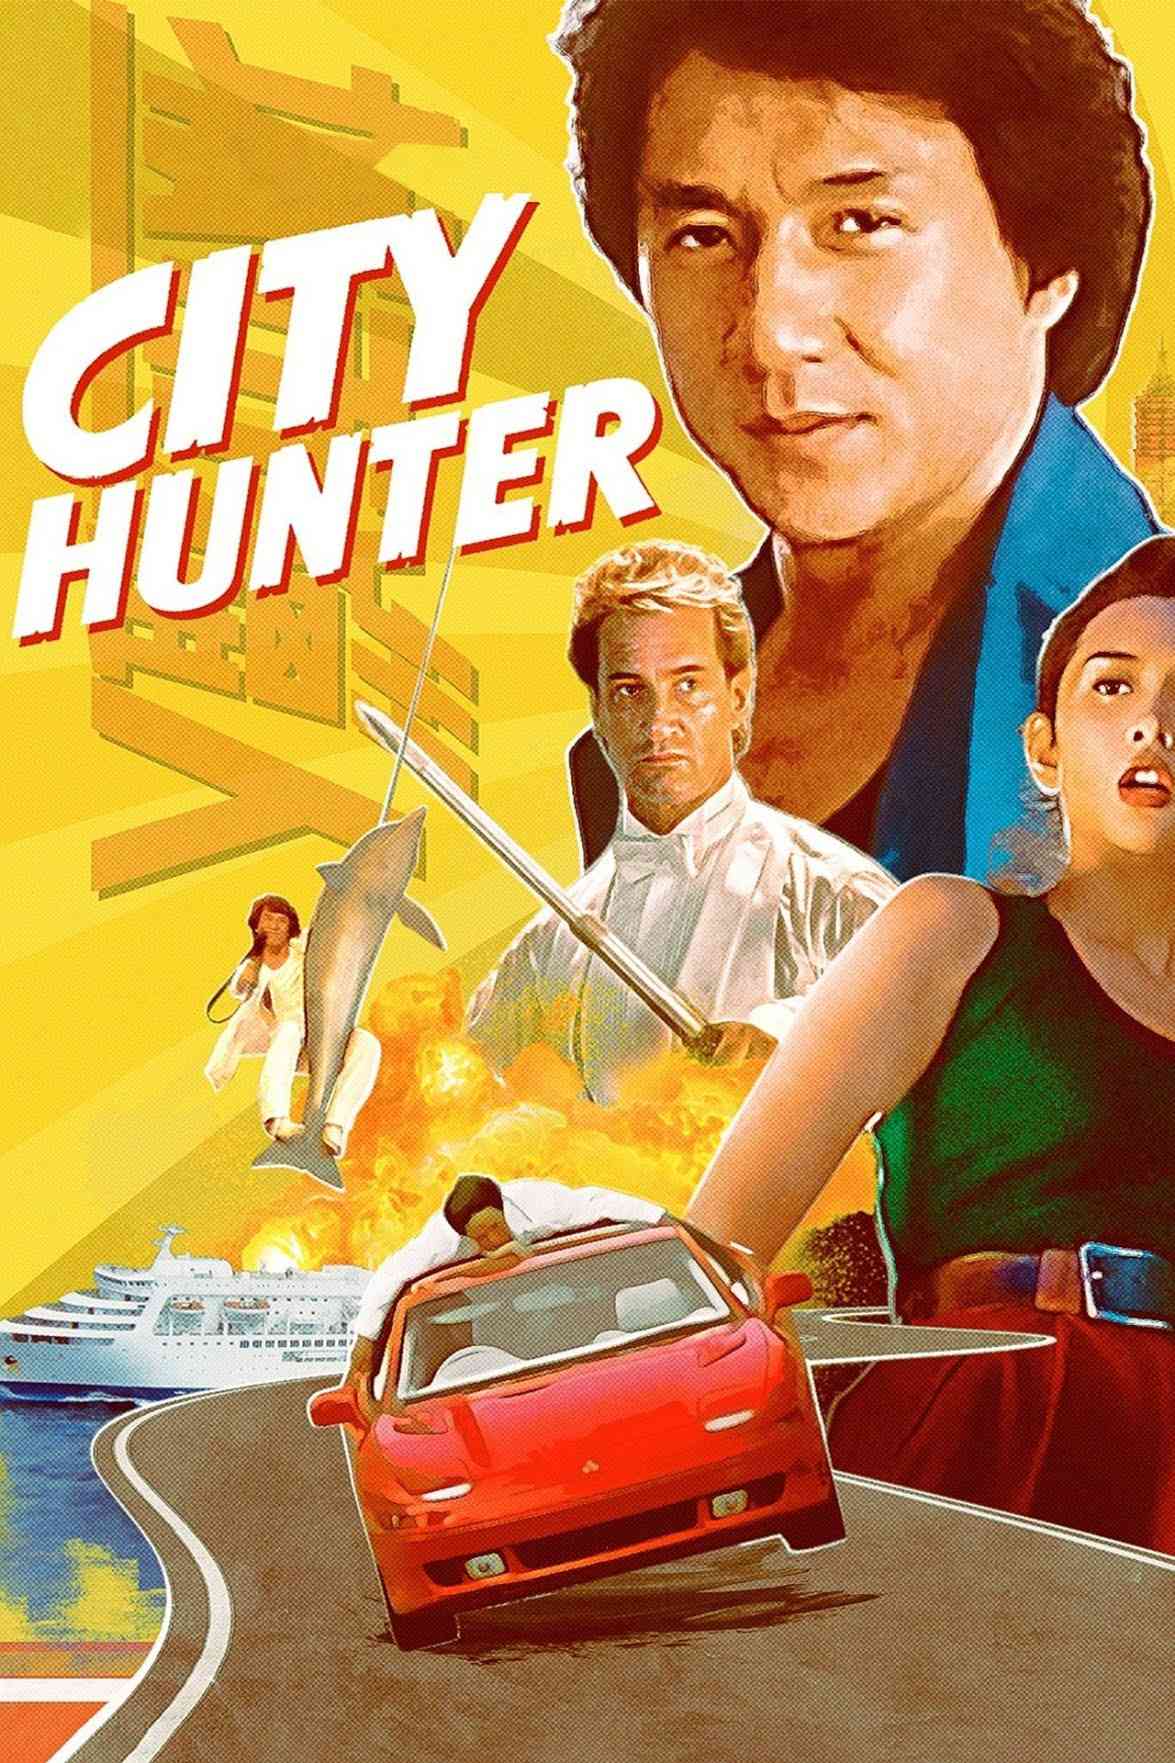 FULL MOVIE: City Hunter (1993)